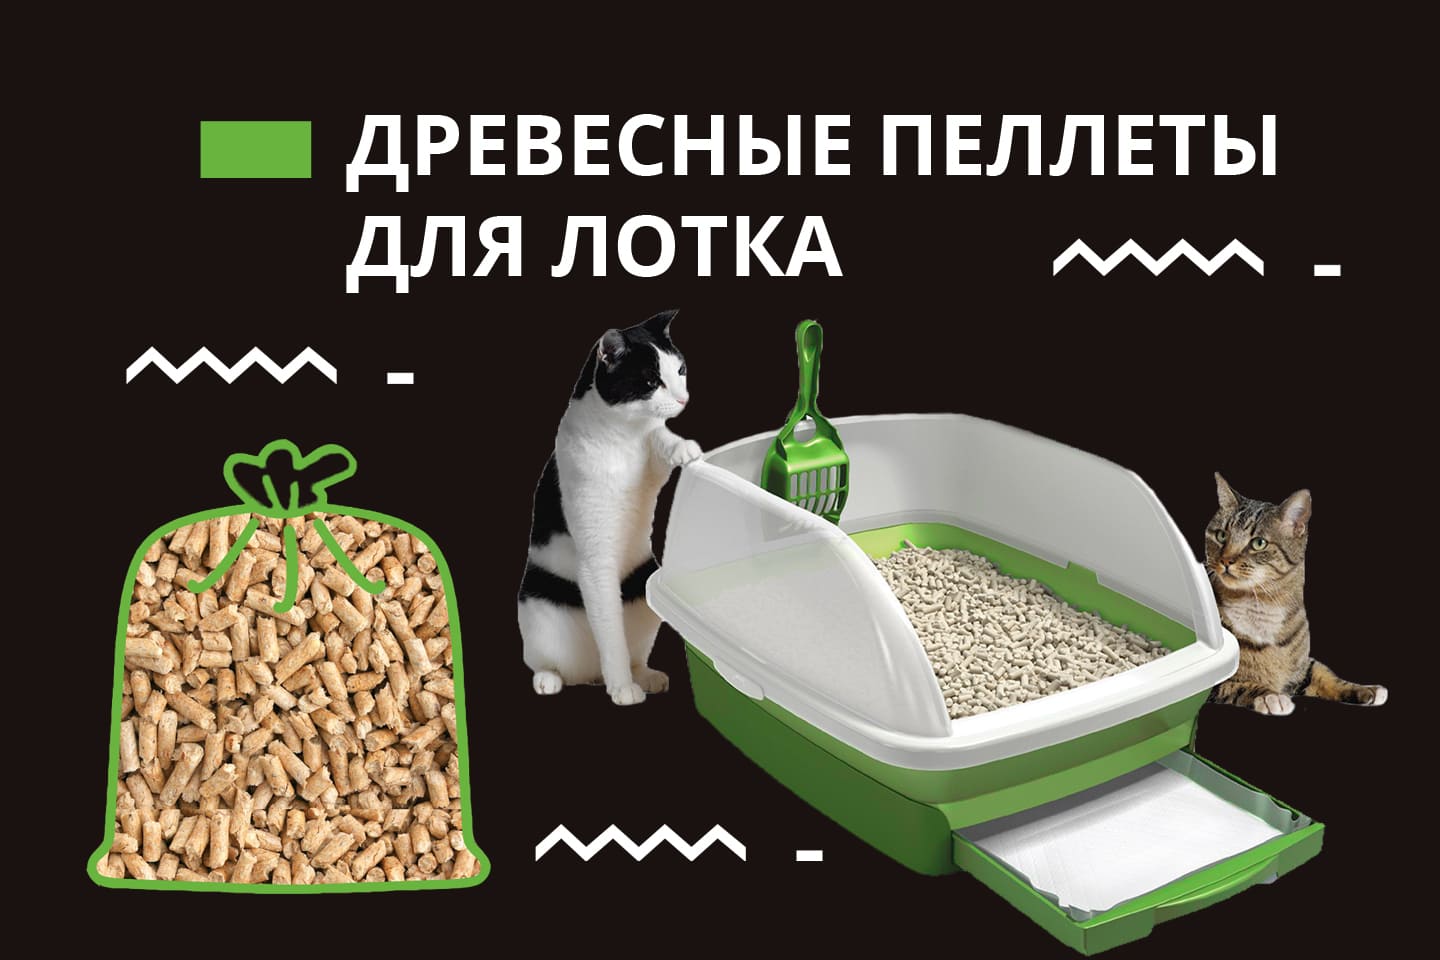 Что делать, если котенок ест наполнитель для туалета?